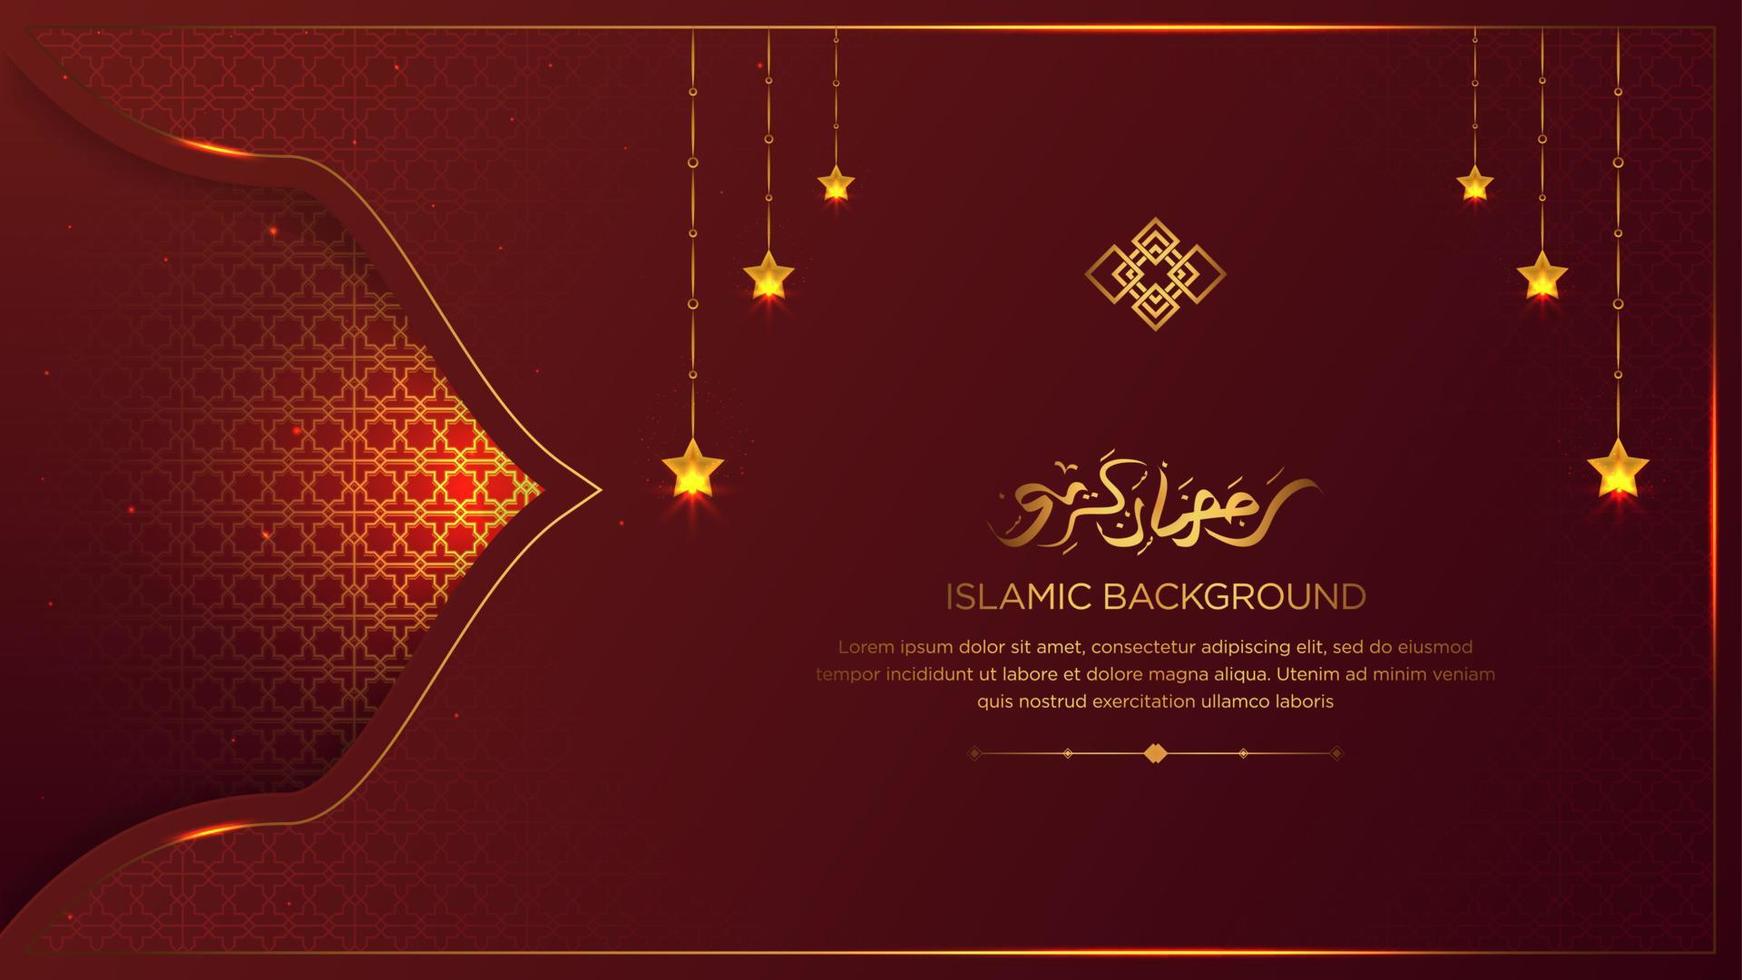 árabe islámico ramadan kareem elegante lujo rojo y dorado fondo ornamental islámico borde islámico y adorno decorativo de estrellas colgantes con caligrafía árabe dorada vector